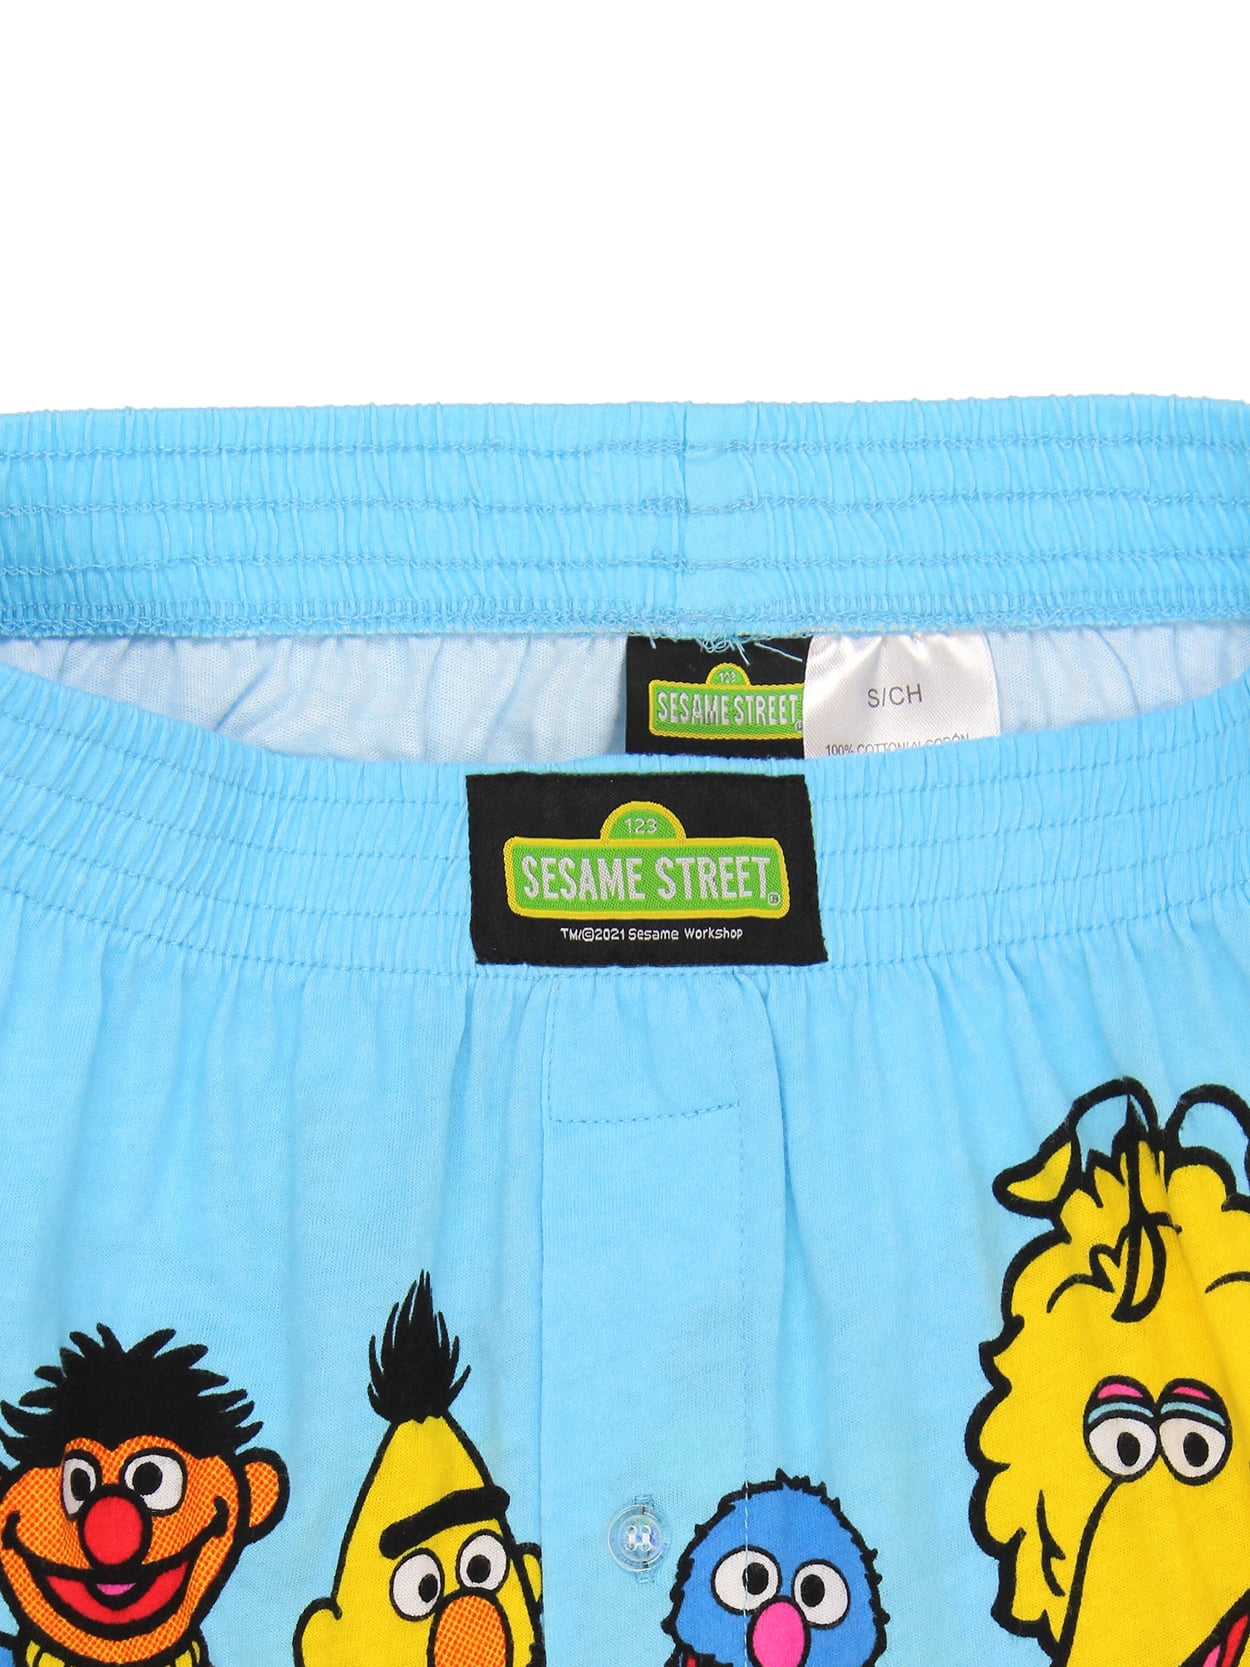 Sesame Street Elmo Cookie Monster Men's Male Boxer Shorts MF21606BX 